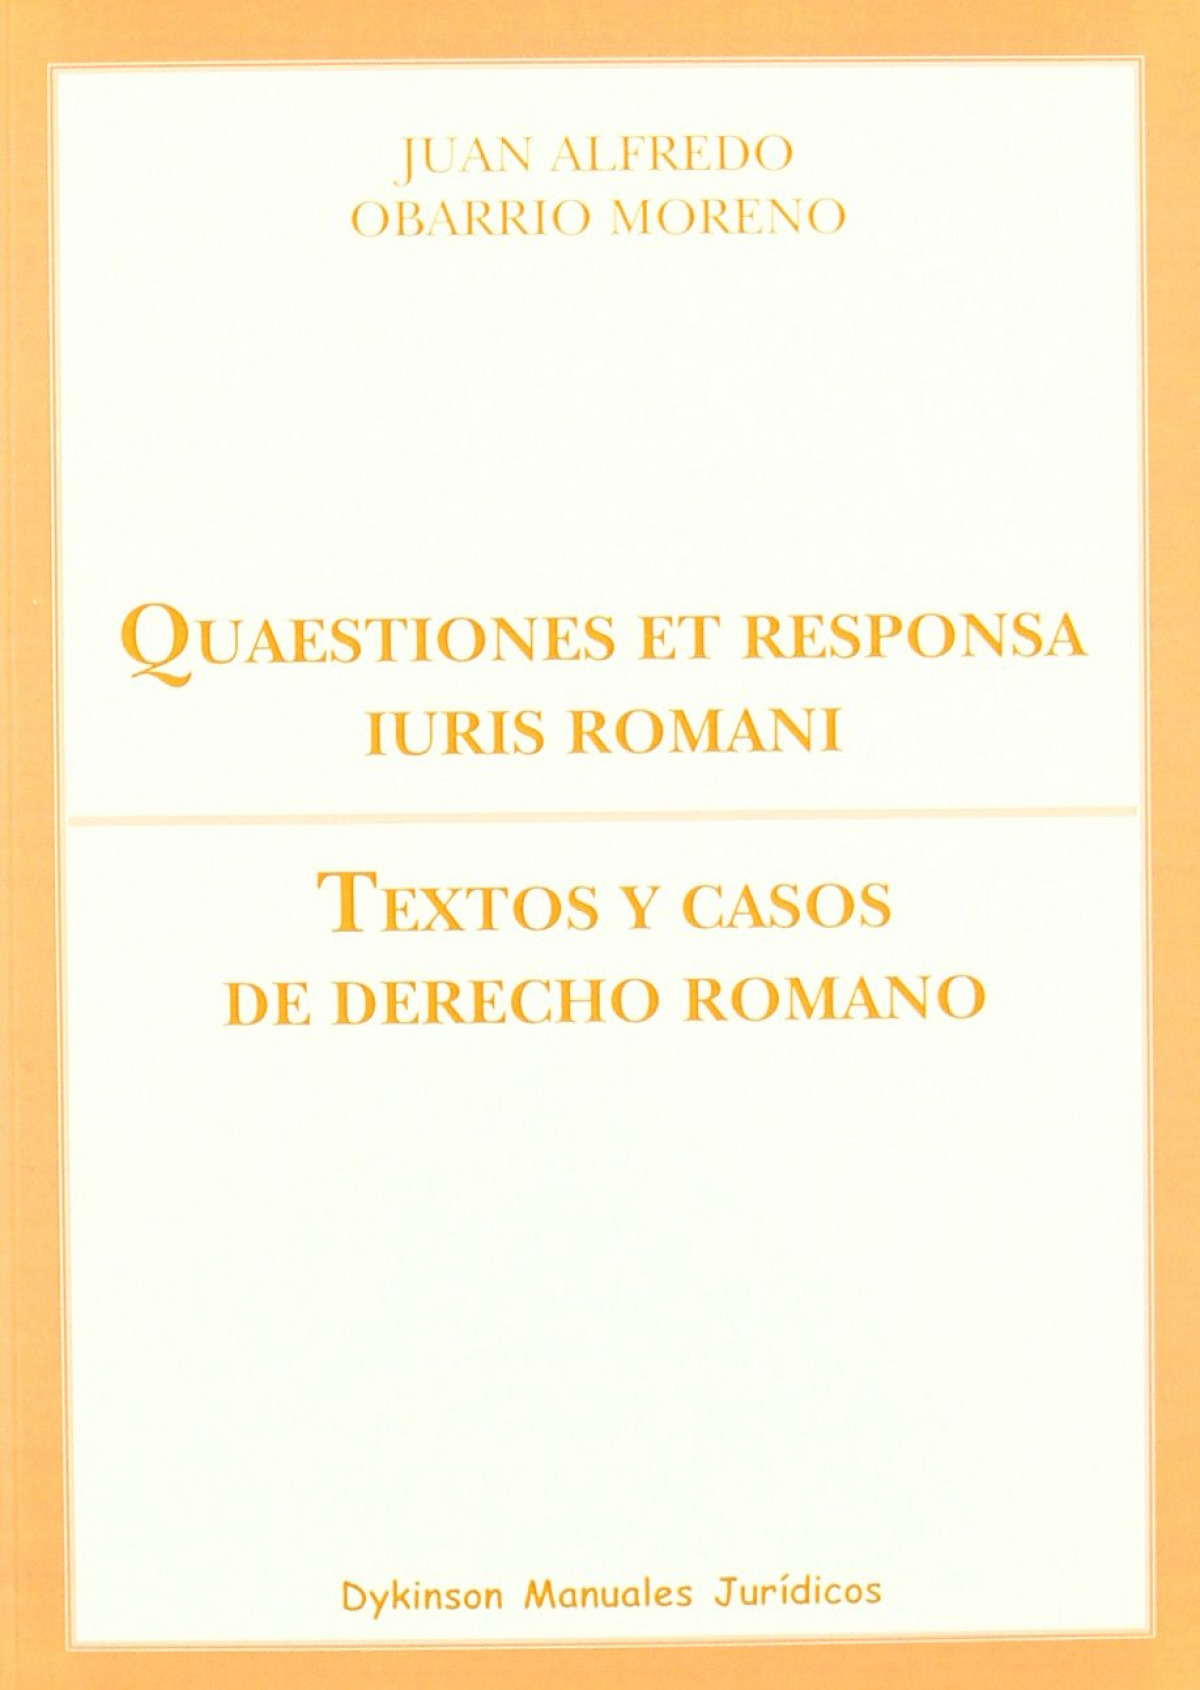 Quaestiones et responsa iuris romani. Textos y casos de derecho romano - Obarrio Moreno, Juan Alfredo